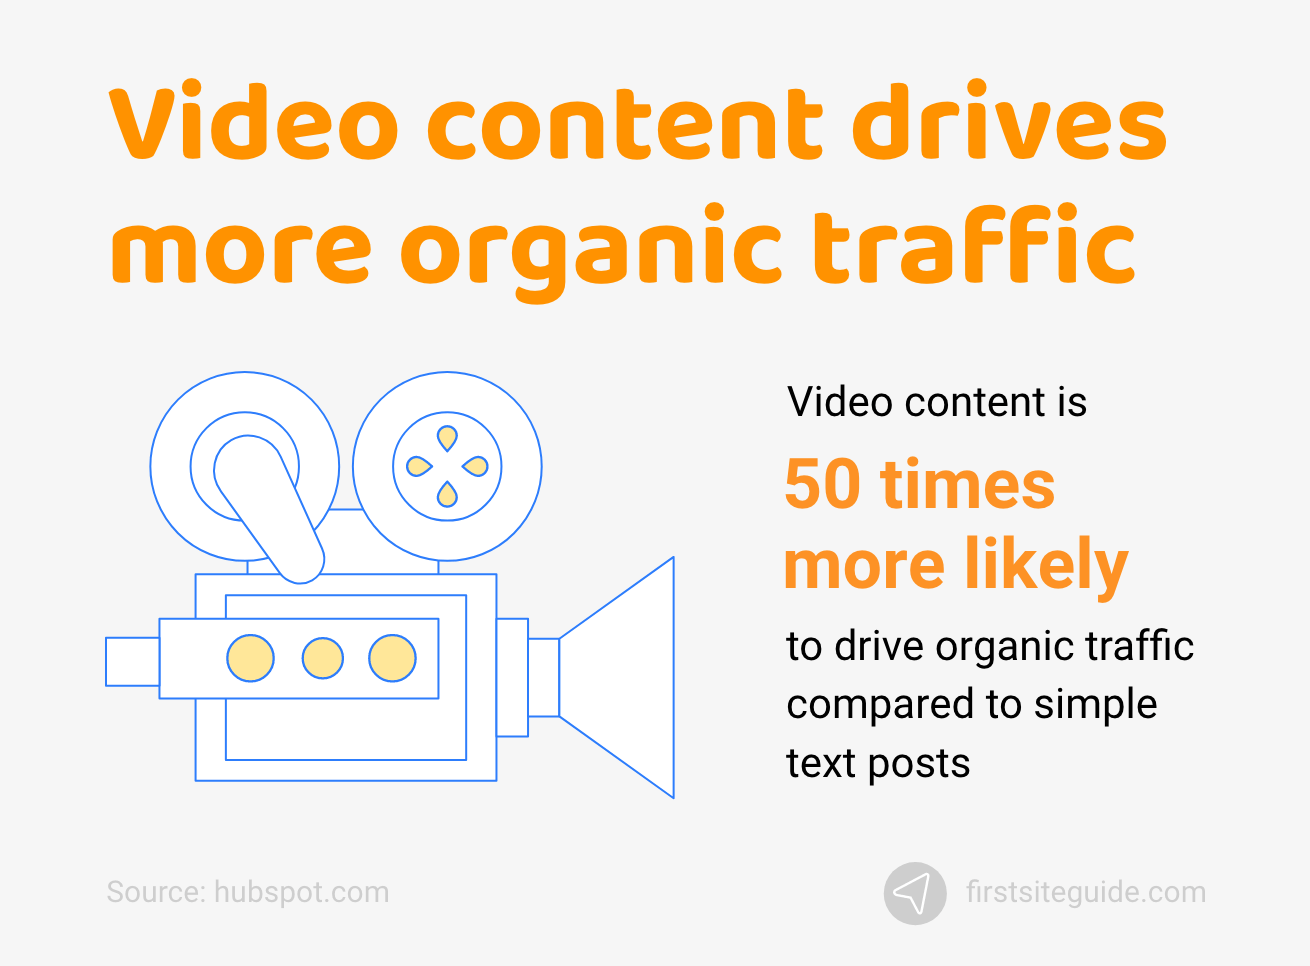 Le contenu vidéo génère plus de trafic organique